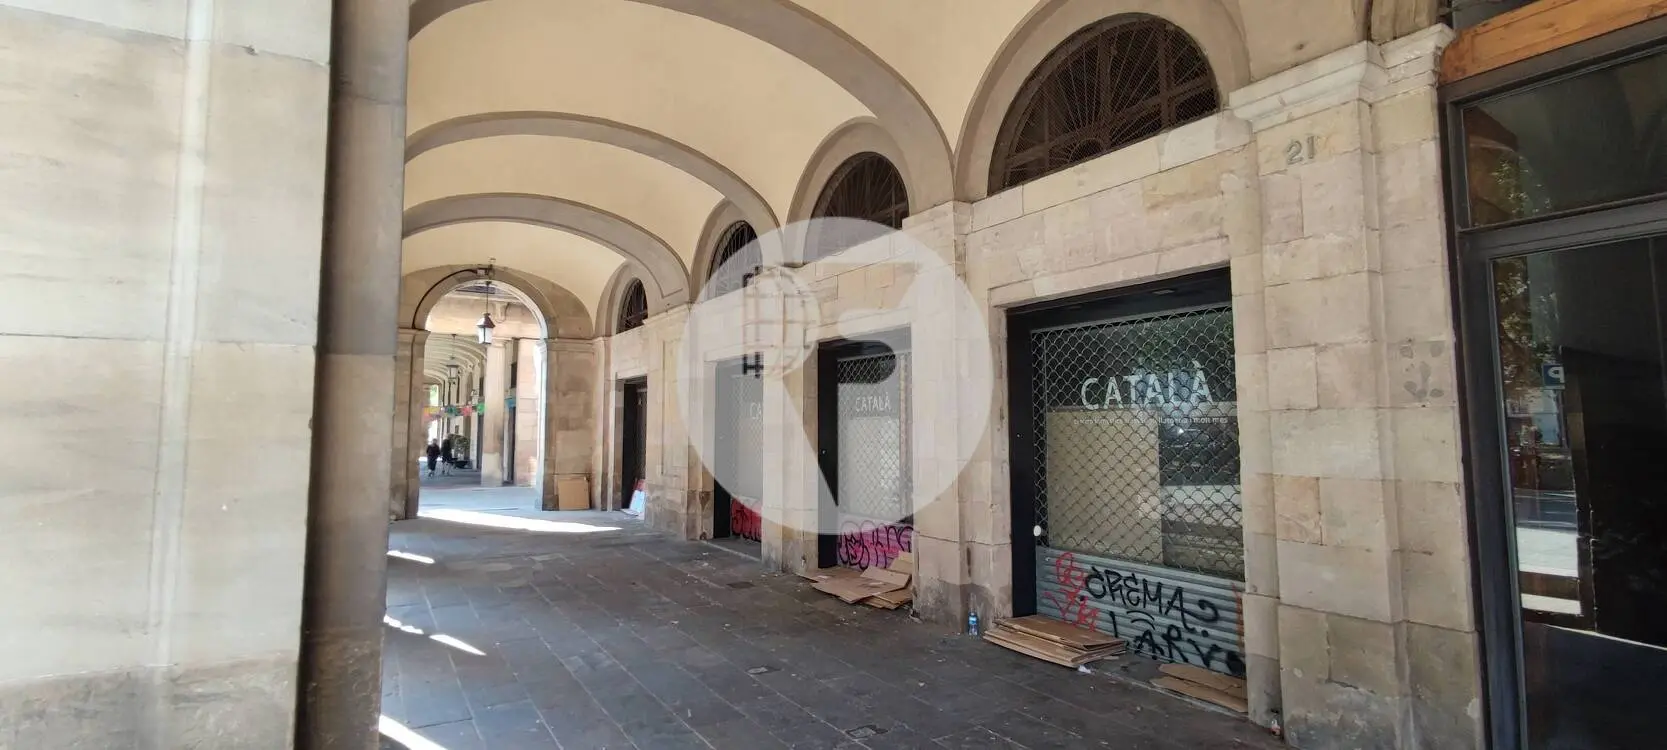 Local comercial cantoner situat al districte de Ciutat Vella, al barri de Sant Pere. Barcelona. 1